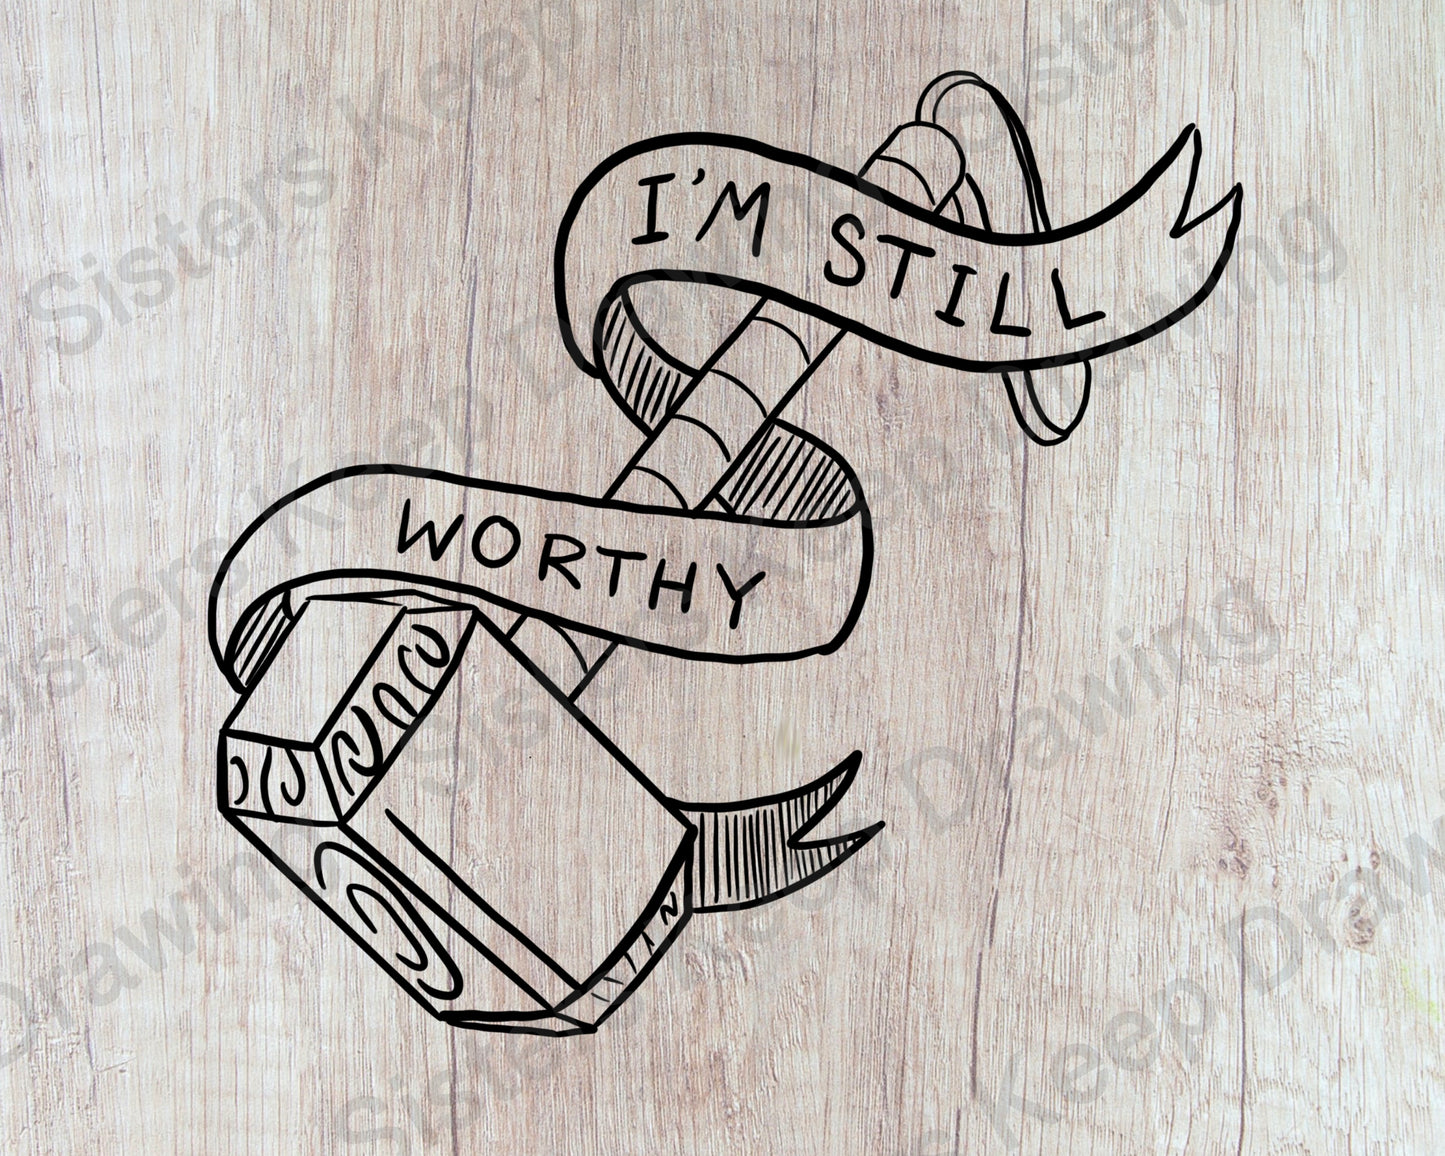 I'm Still Worthy- Tattoo Transparent PNG